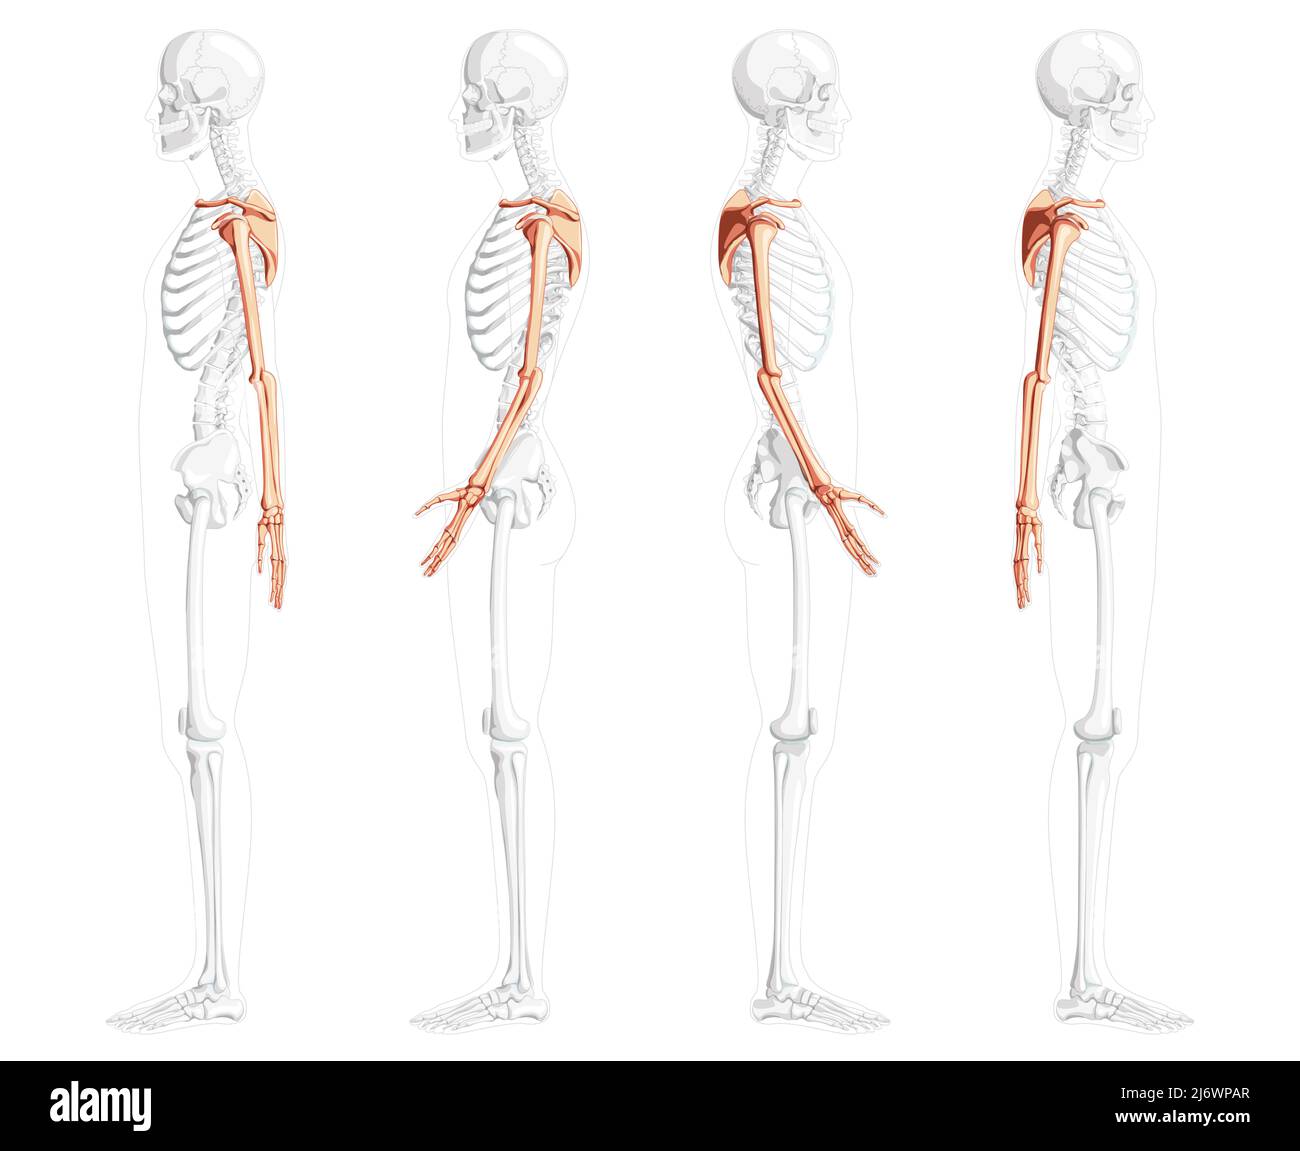 Scheletro arto superiore braccia con cintura spalla Vista laterale umana con posizione delle ossa parzialmente trasparente. Set di mani, clavicola, scapola, avambracci immagine vettoriale piatta realistica dell'anatomia isolata Illustrazione Vettoriale